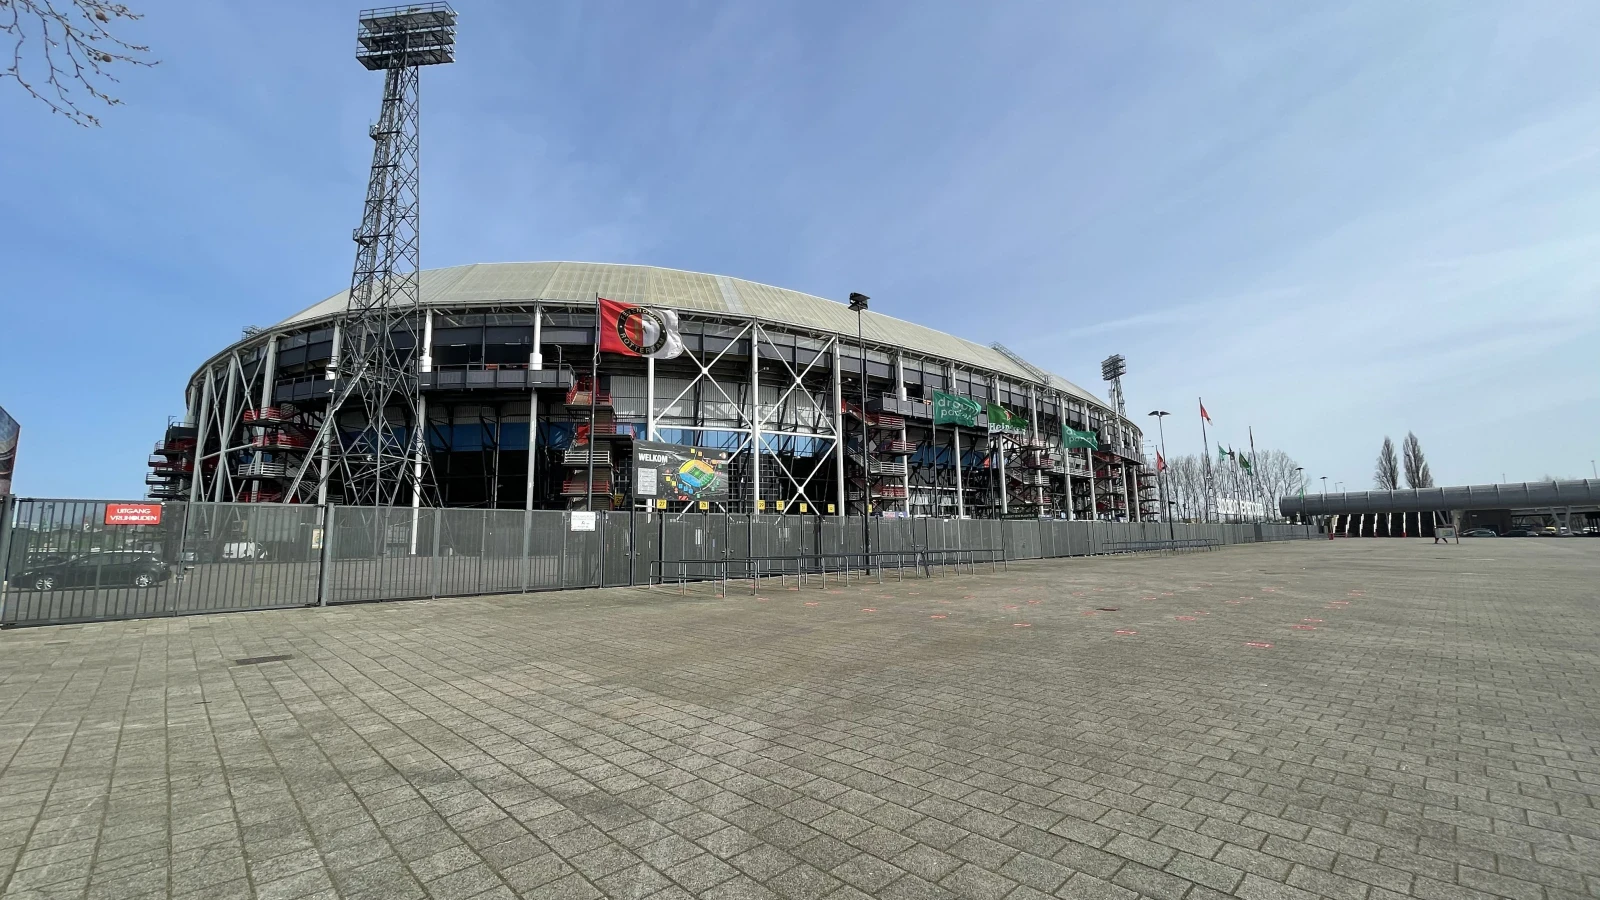 Persconferentie: stadions blijven dicht tot minimaal 14 januari